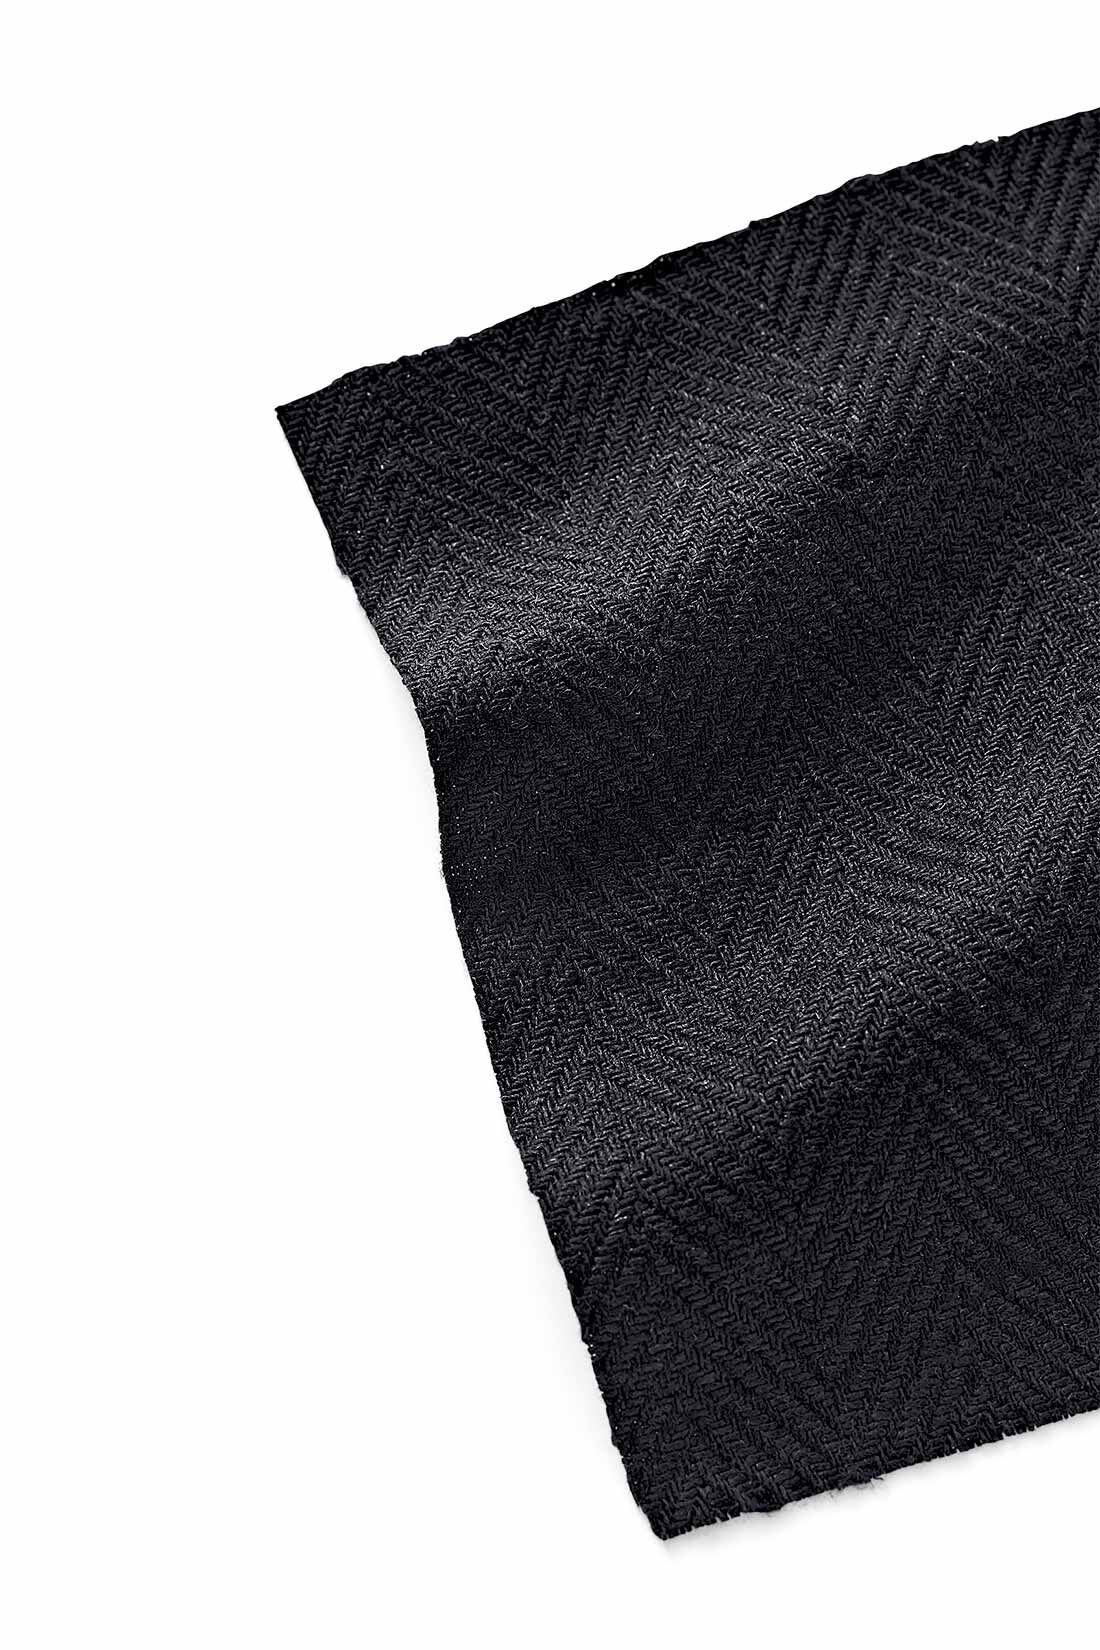 MEDE19F|MEDE19F　リネン混ヘリンボーン素材のベルテッドパンツ〈ブラック〉|ヨーロッパのヴィンテージの生地感をイメージして選んだ、ヘリンボーン素材。レーヨンのしなやかさと麻のシャリ感を備えています。